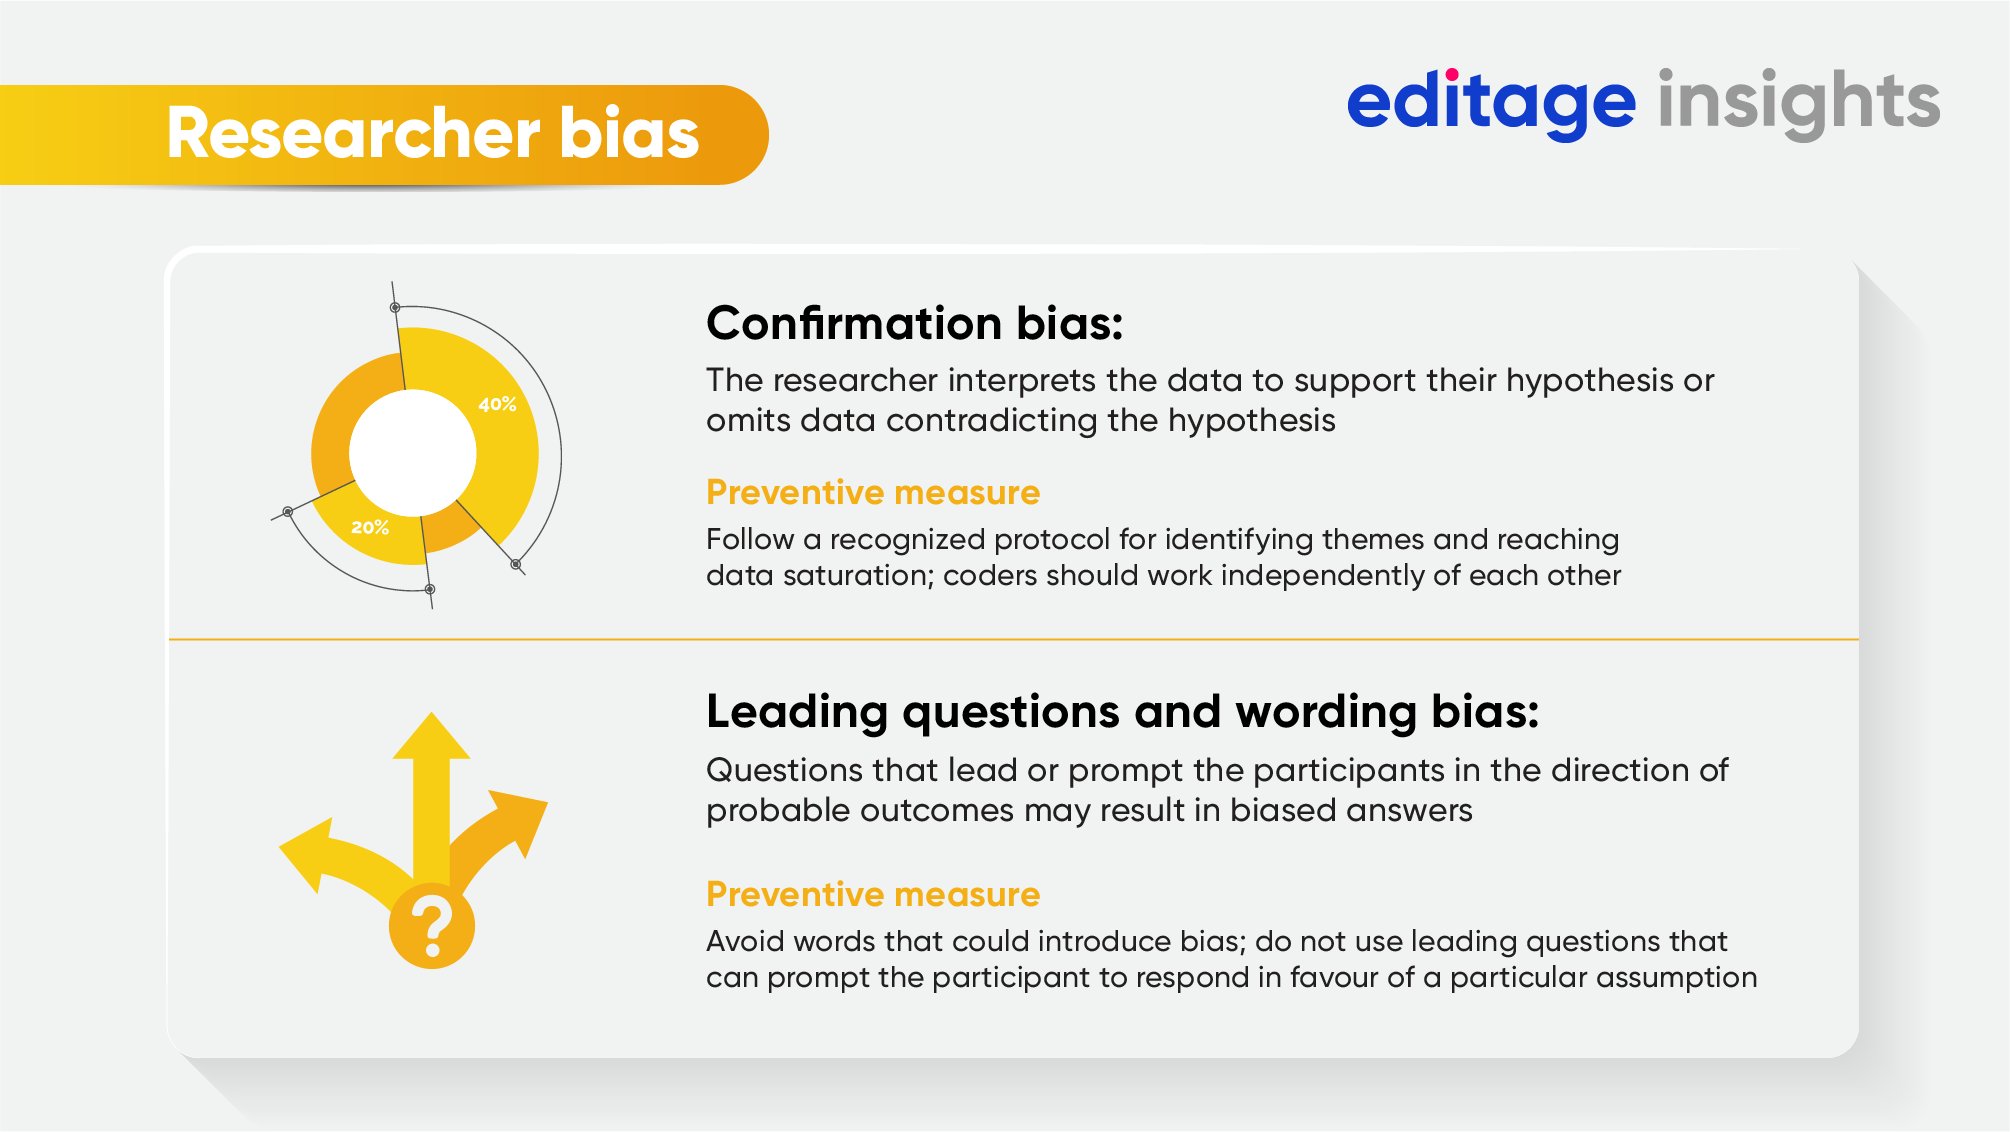 bias qualitative research pdf